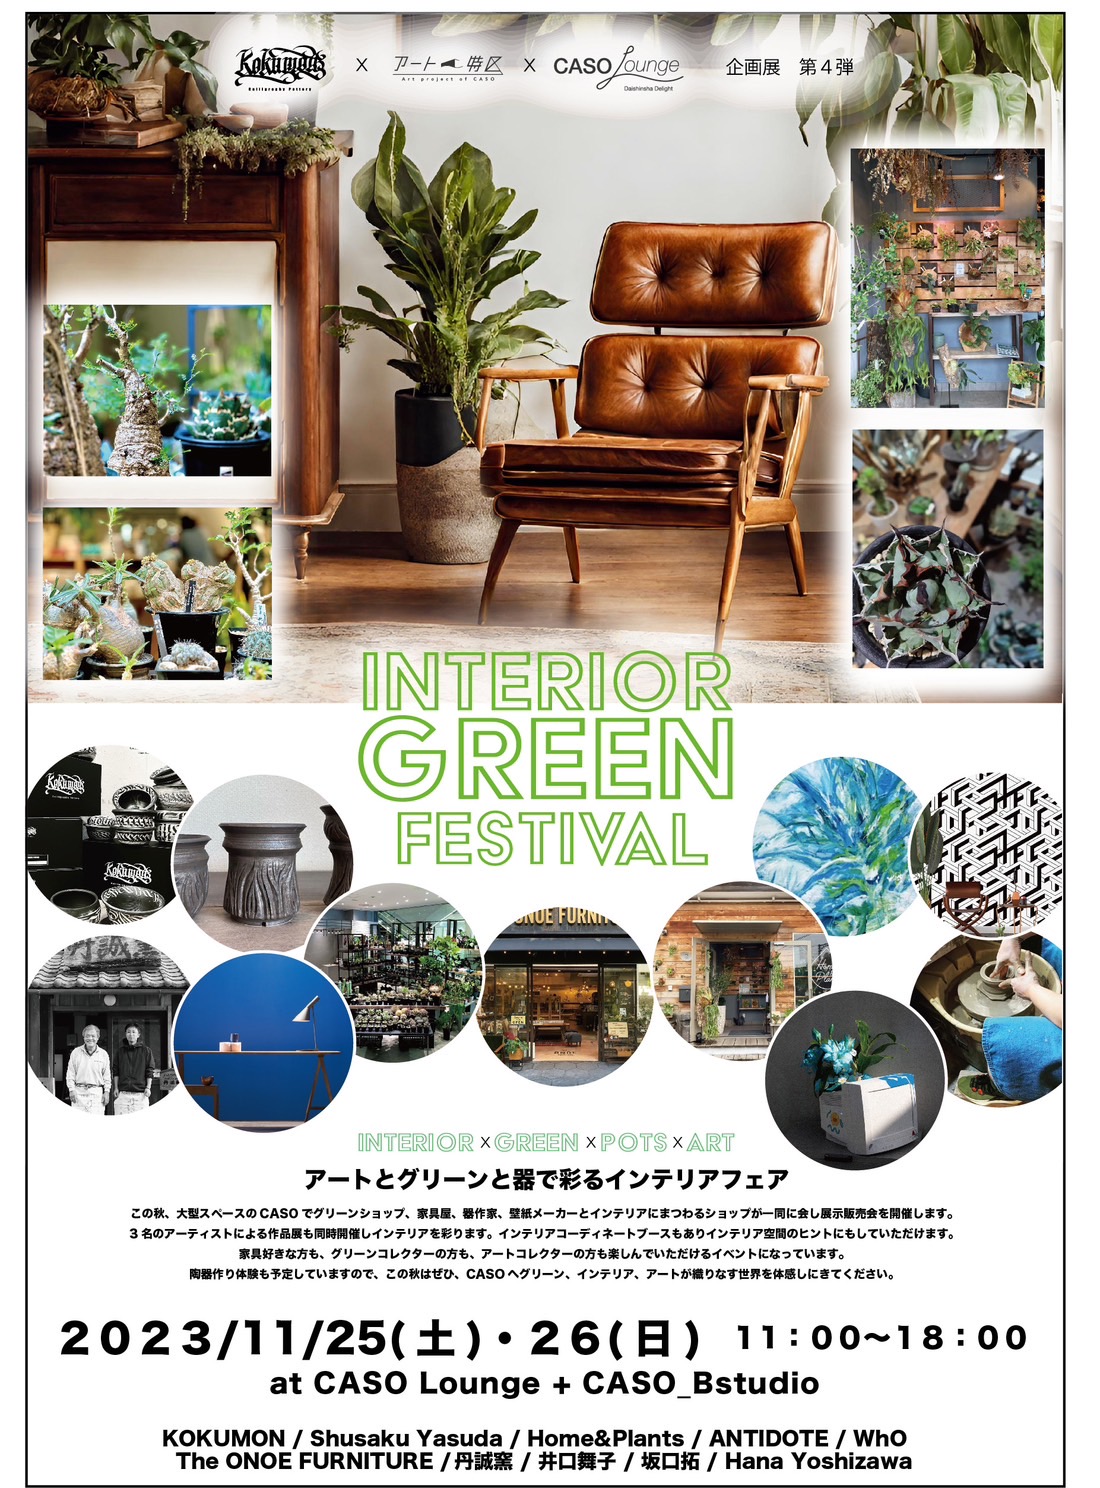 rimwork×CASOアート特区presents 「INTERIOR GREEN FESTIVL」イベントレポート